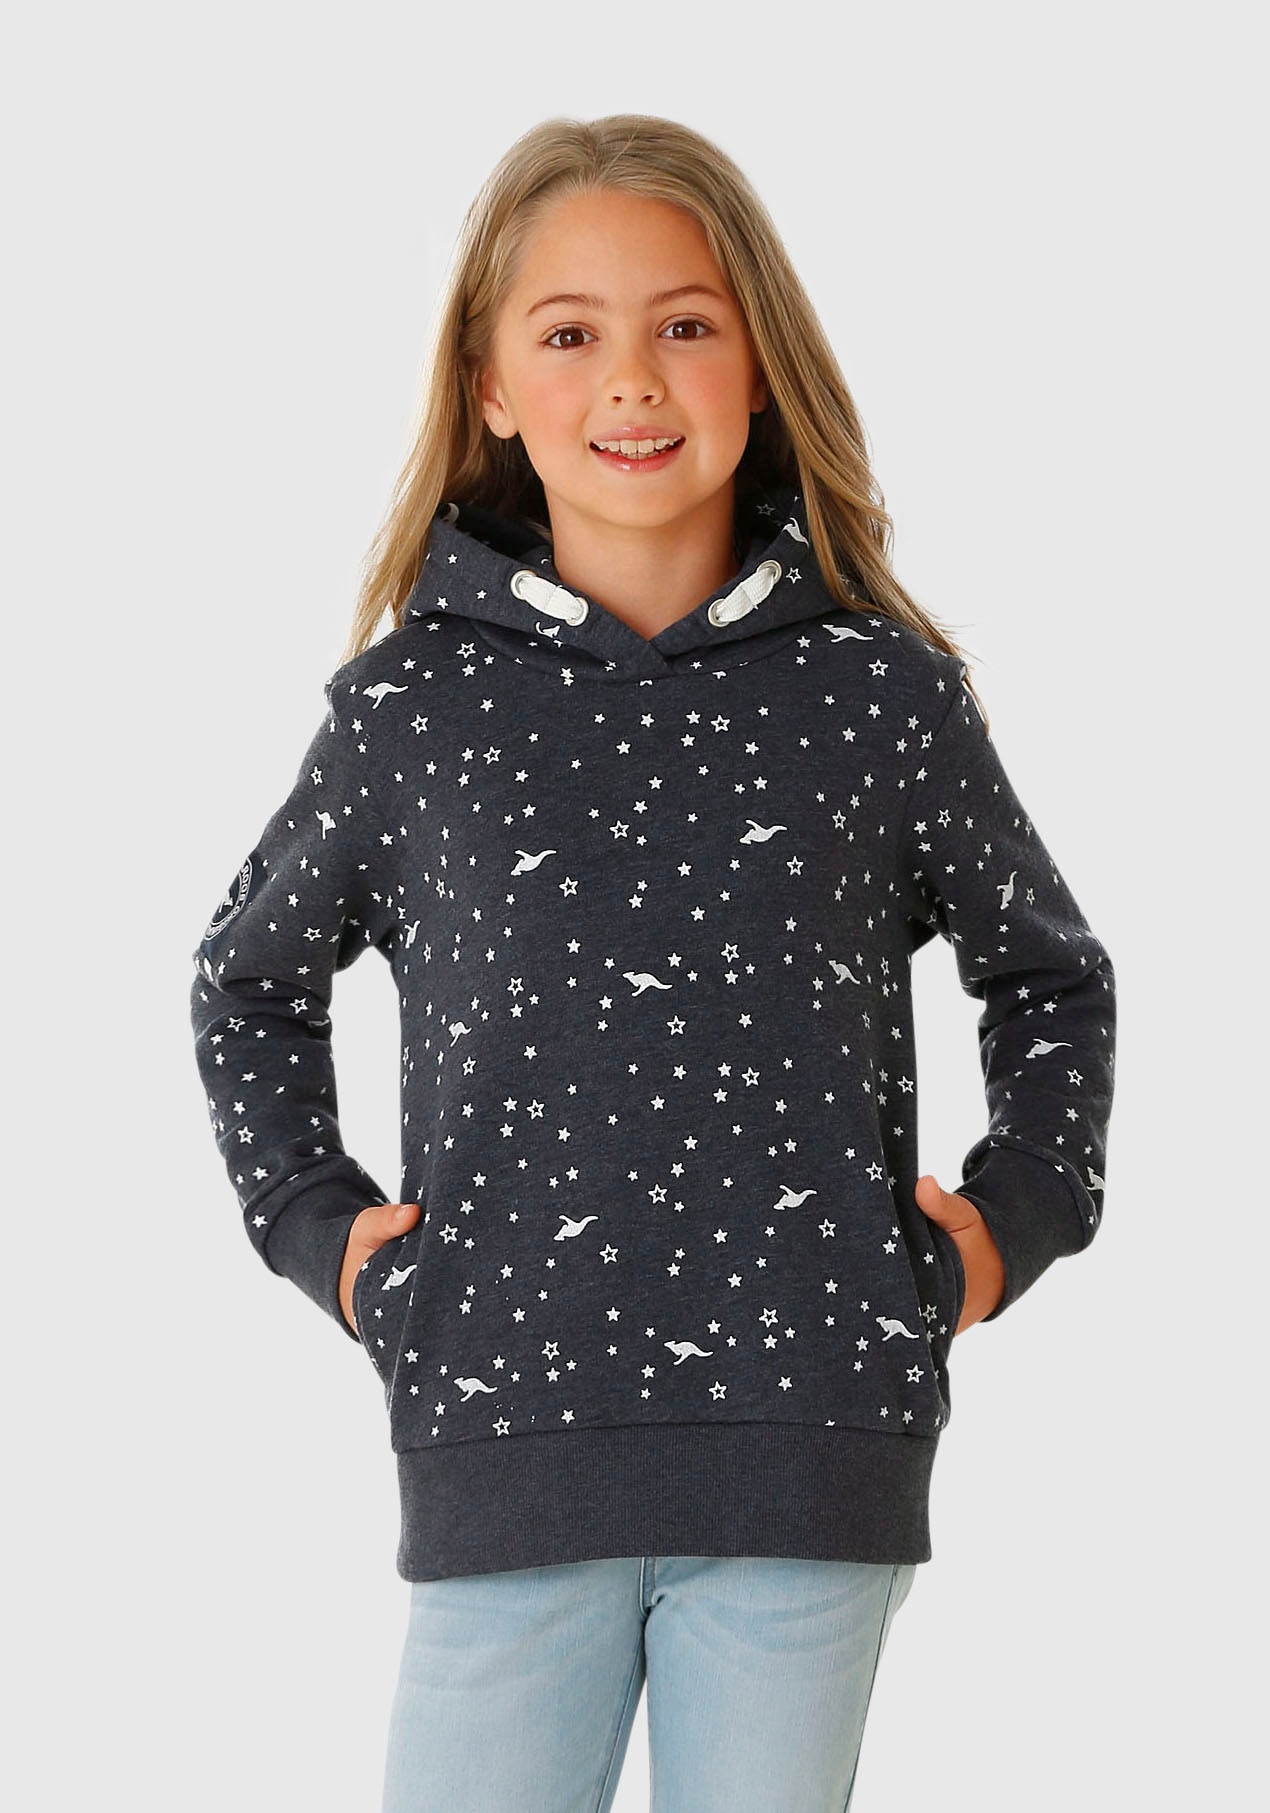 Shop im Sweatshirts -jacken Mädchen online bestellen OTTO & Online